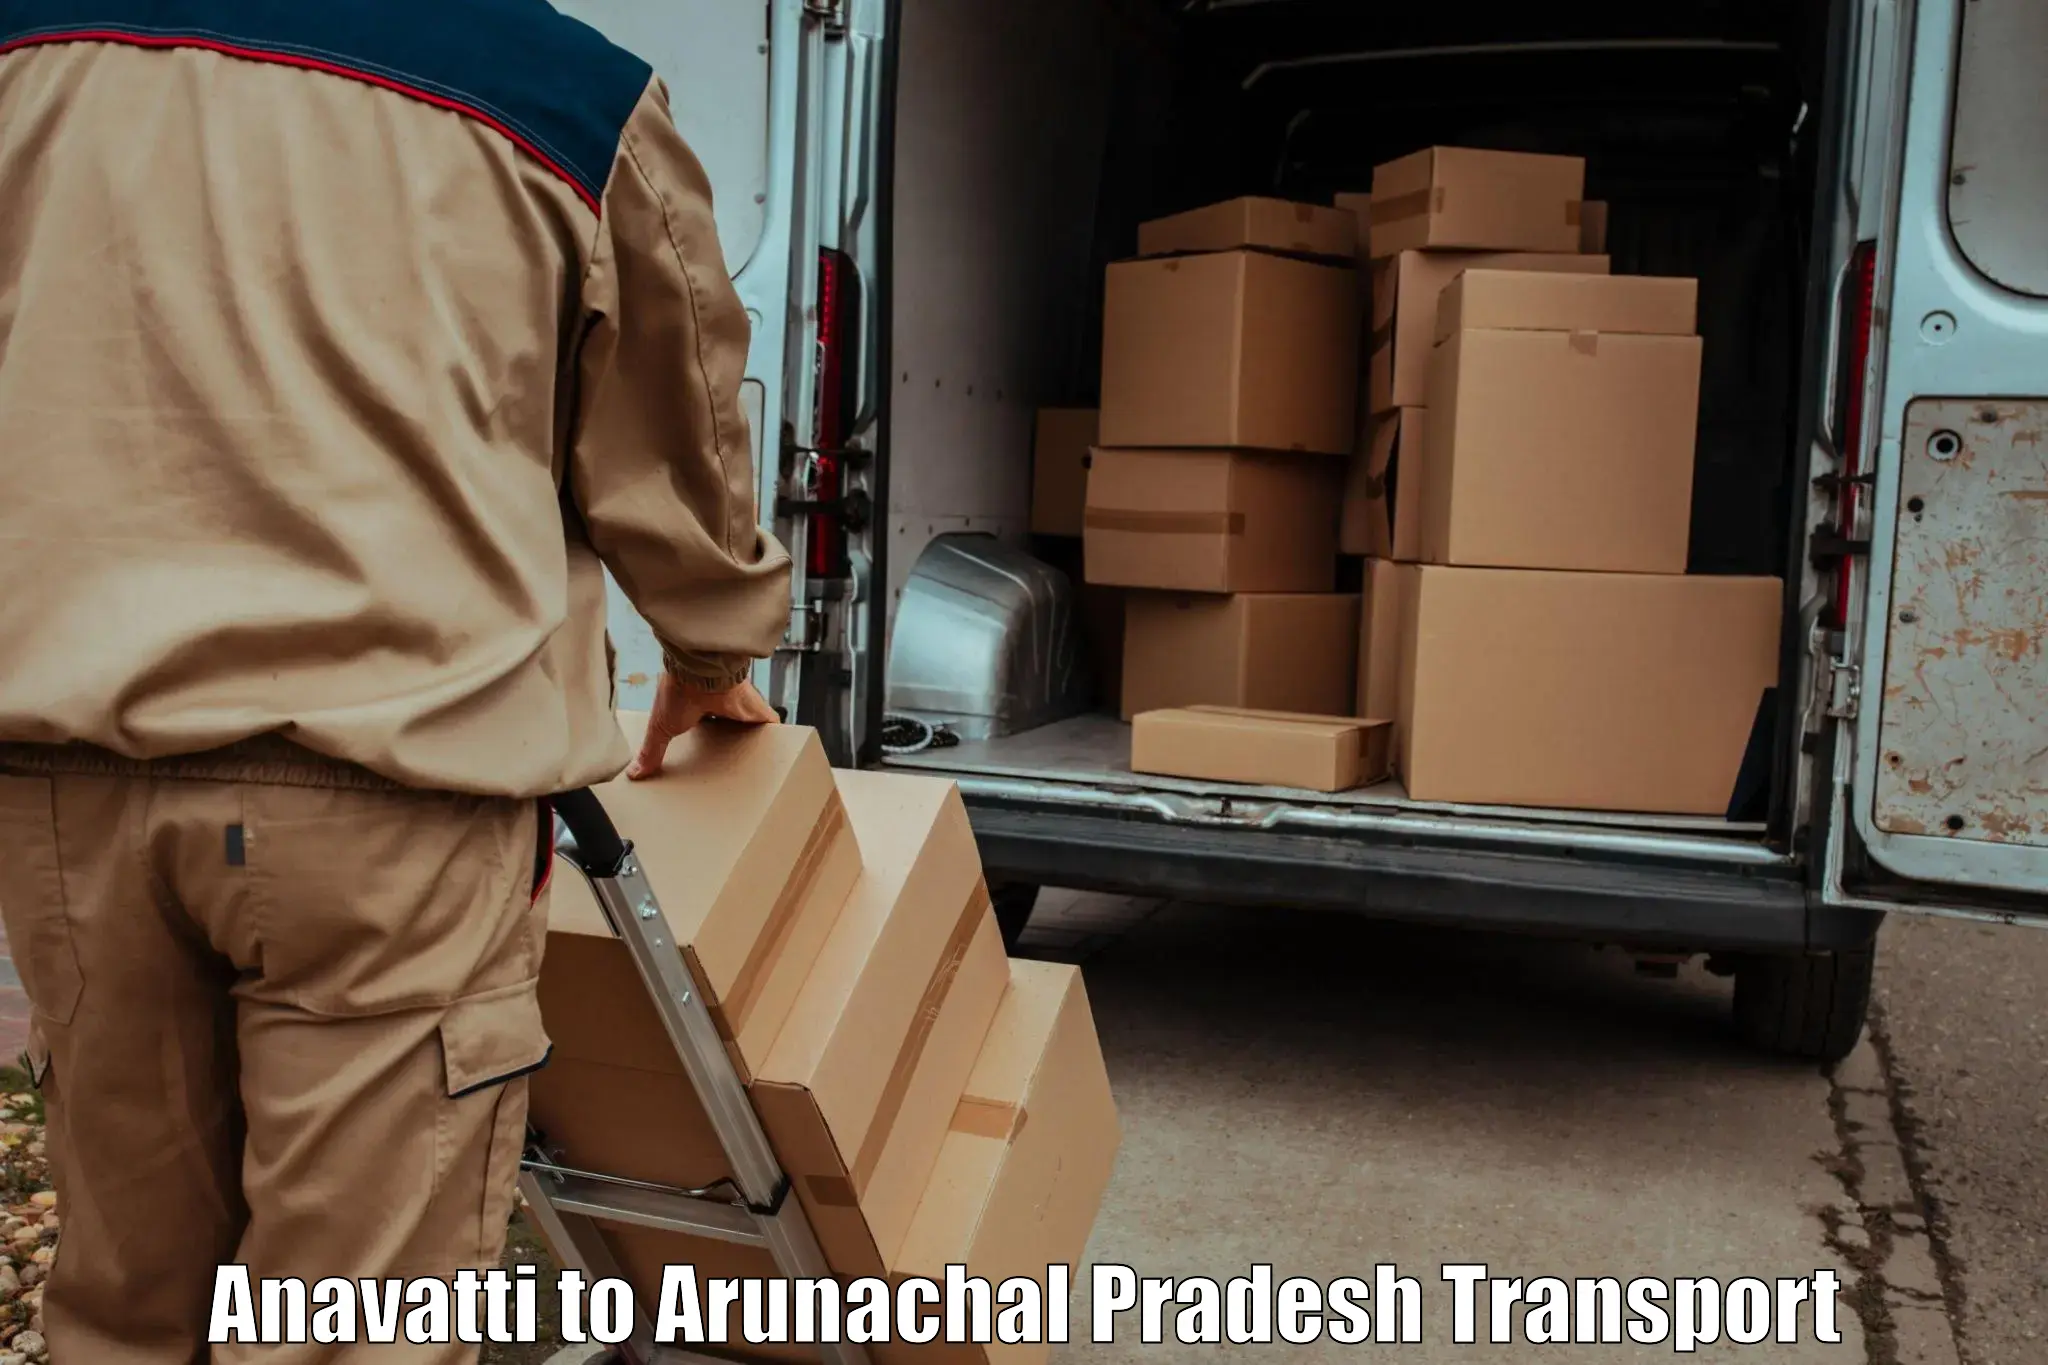 Nearby transport service in Anavatti to Itanagar